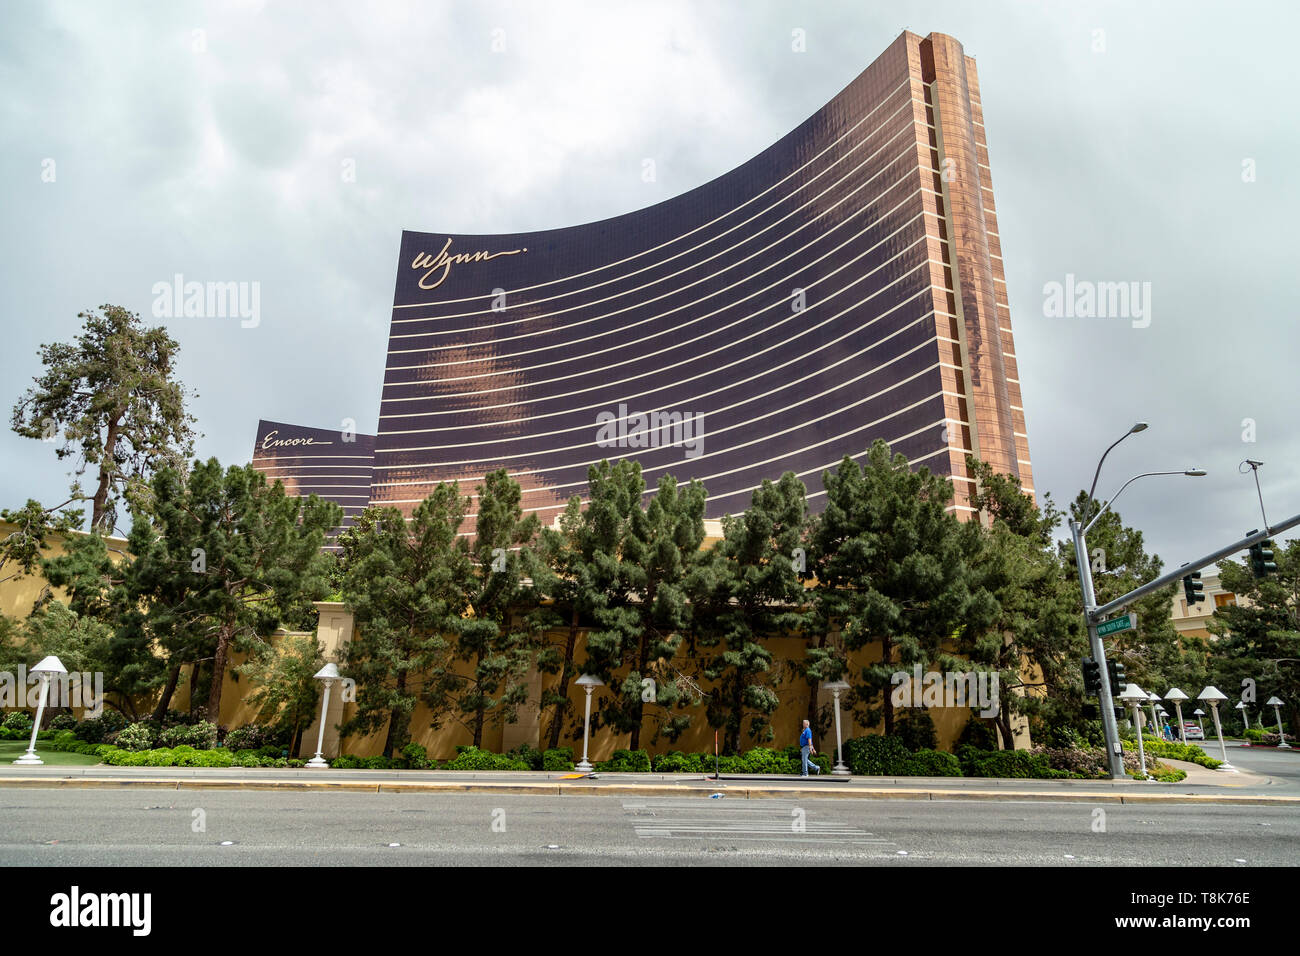 The Wynn hotel and casino, Las Vegas Boulevard South (The Strip), Las Vegas, Nevada, USA Stock Photo